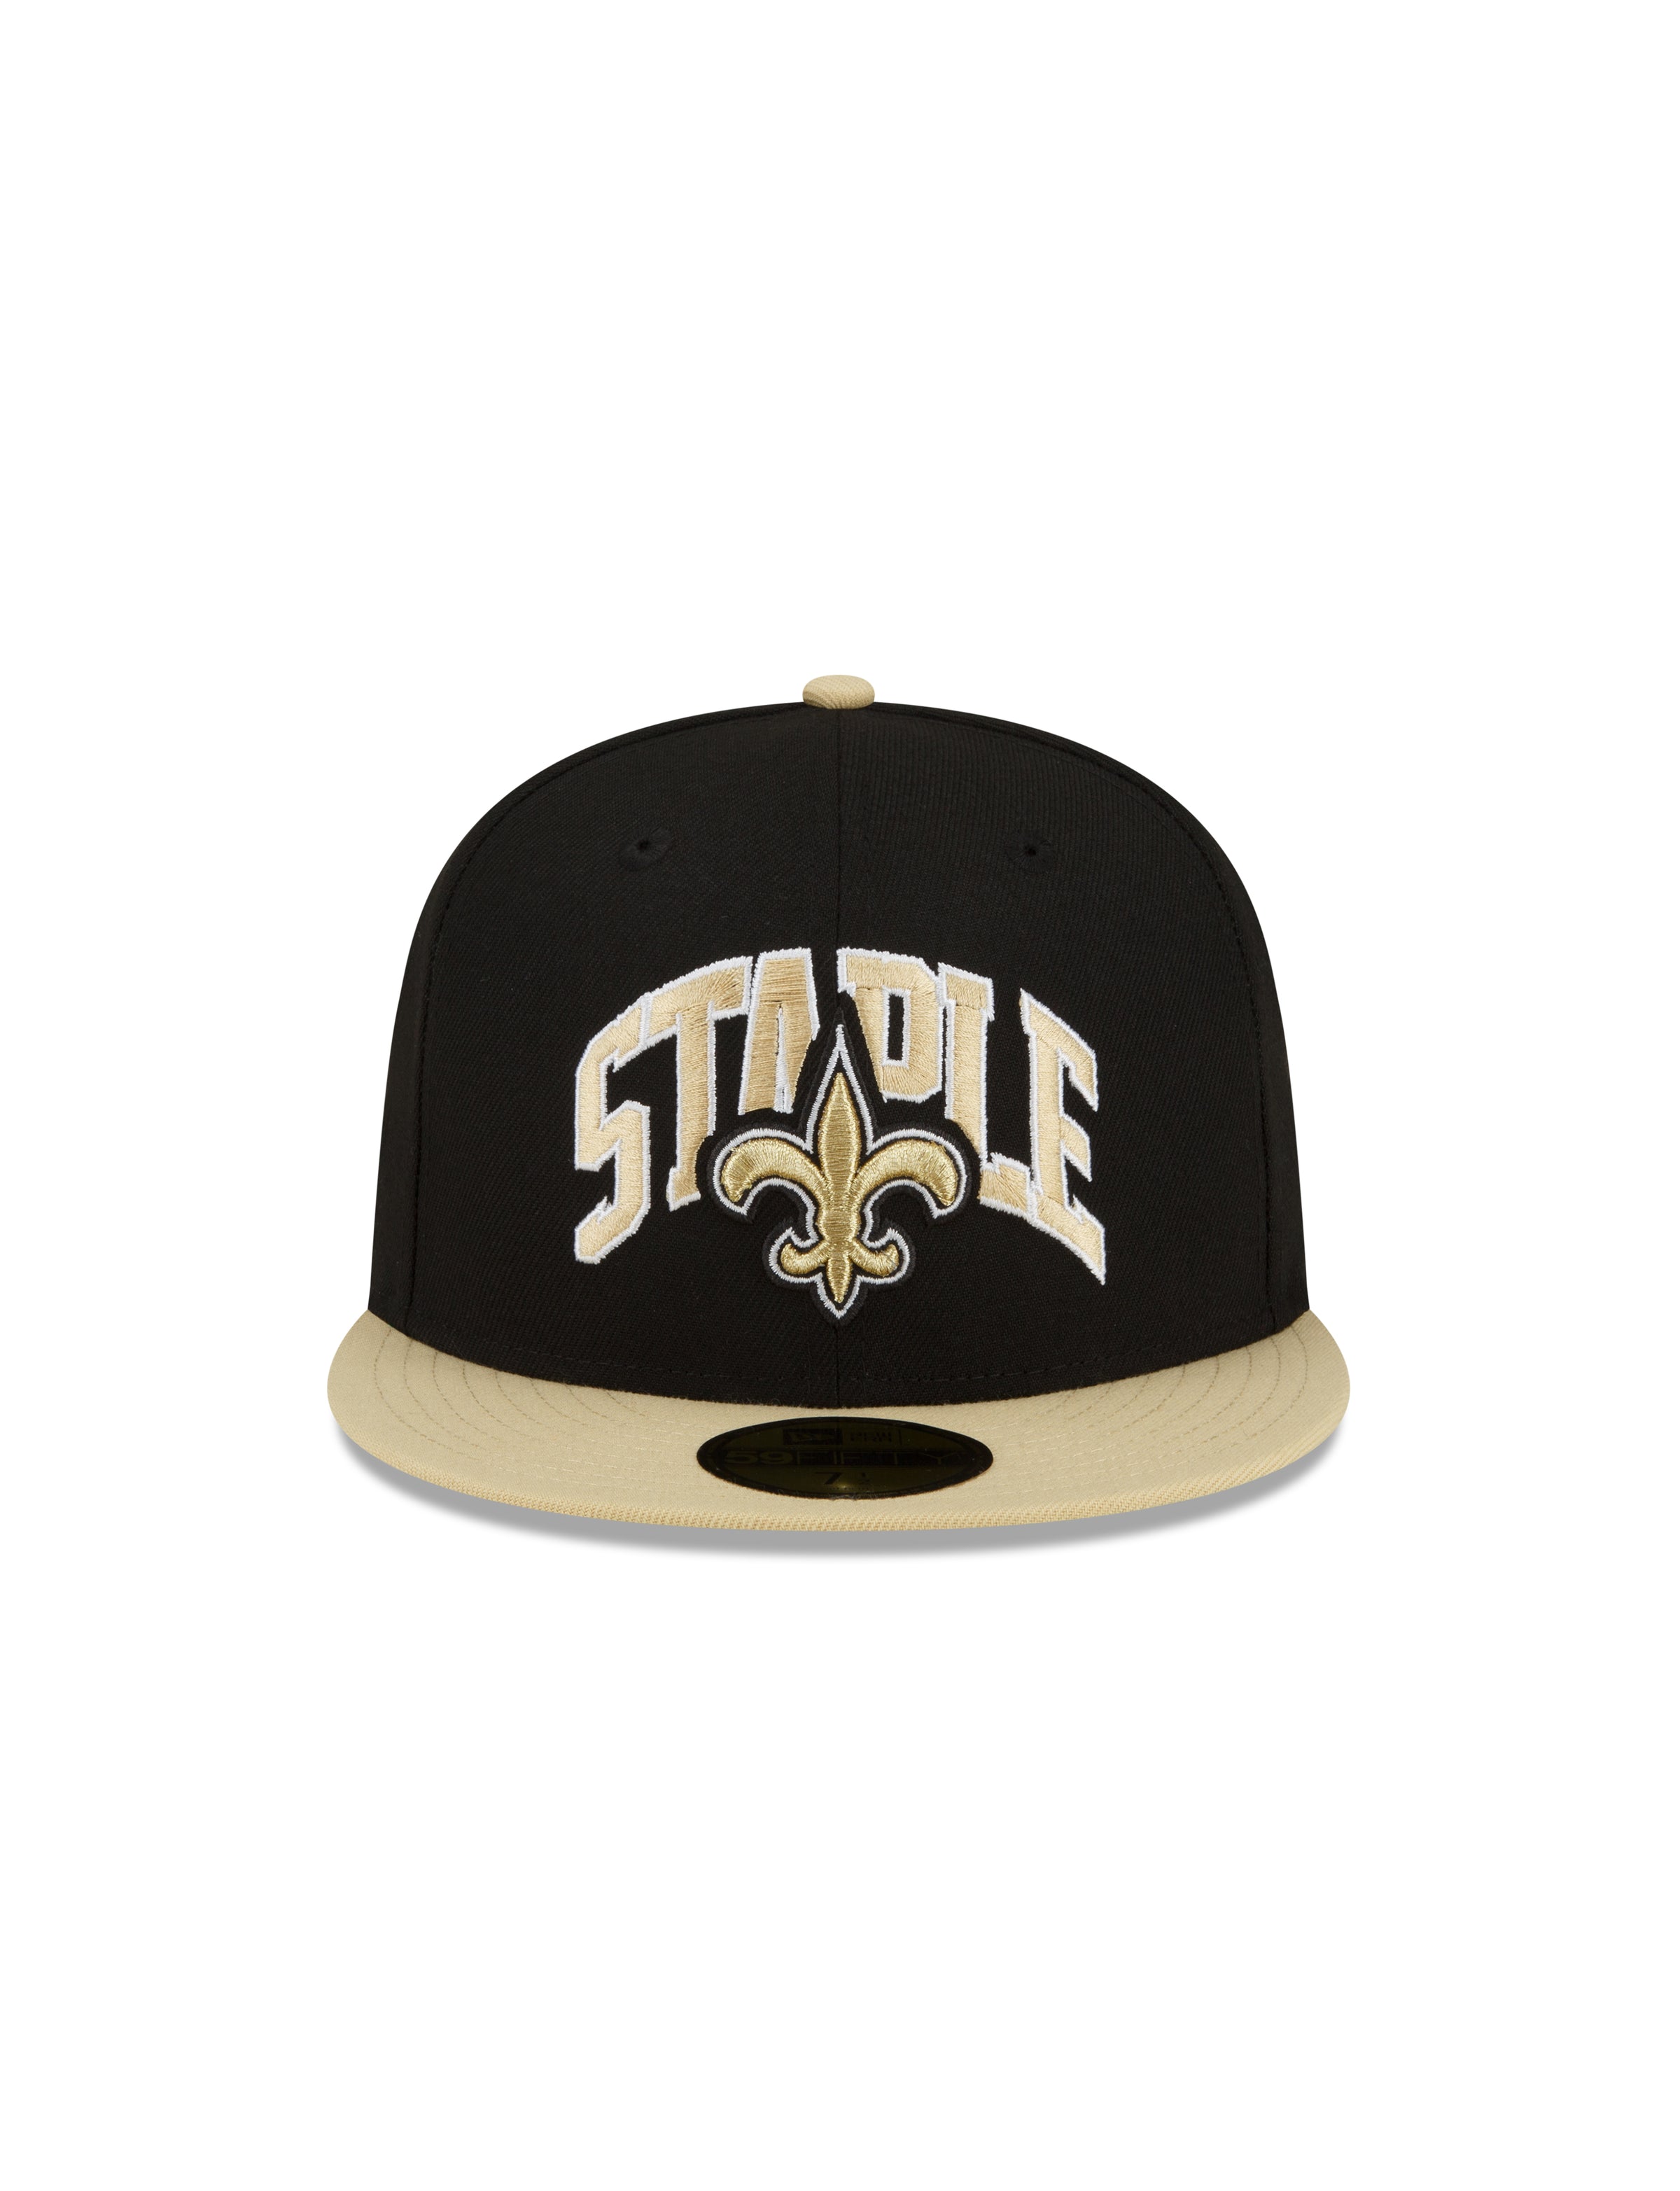 nfl shop saints hats